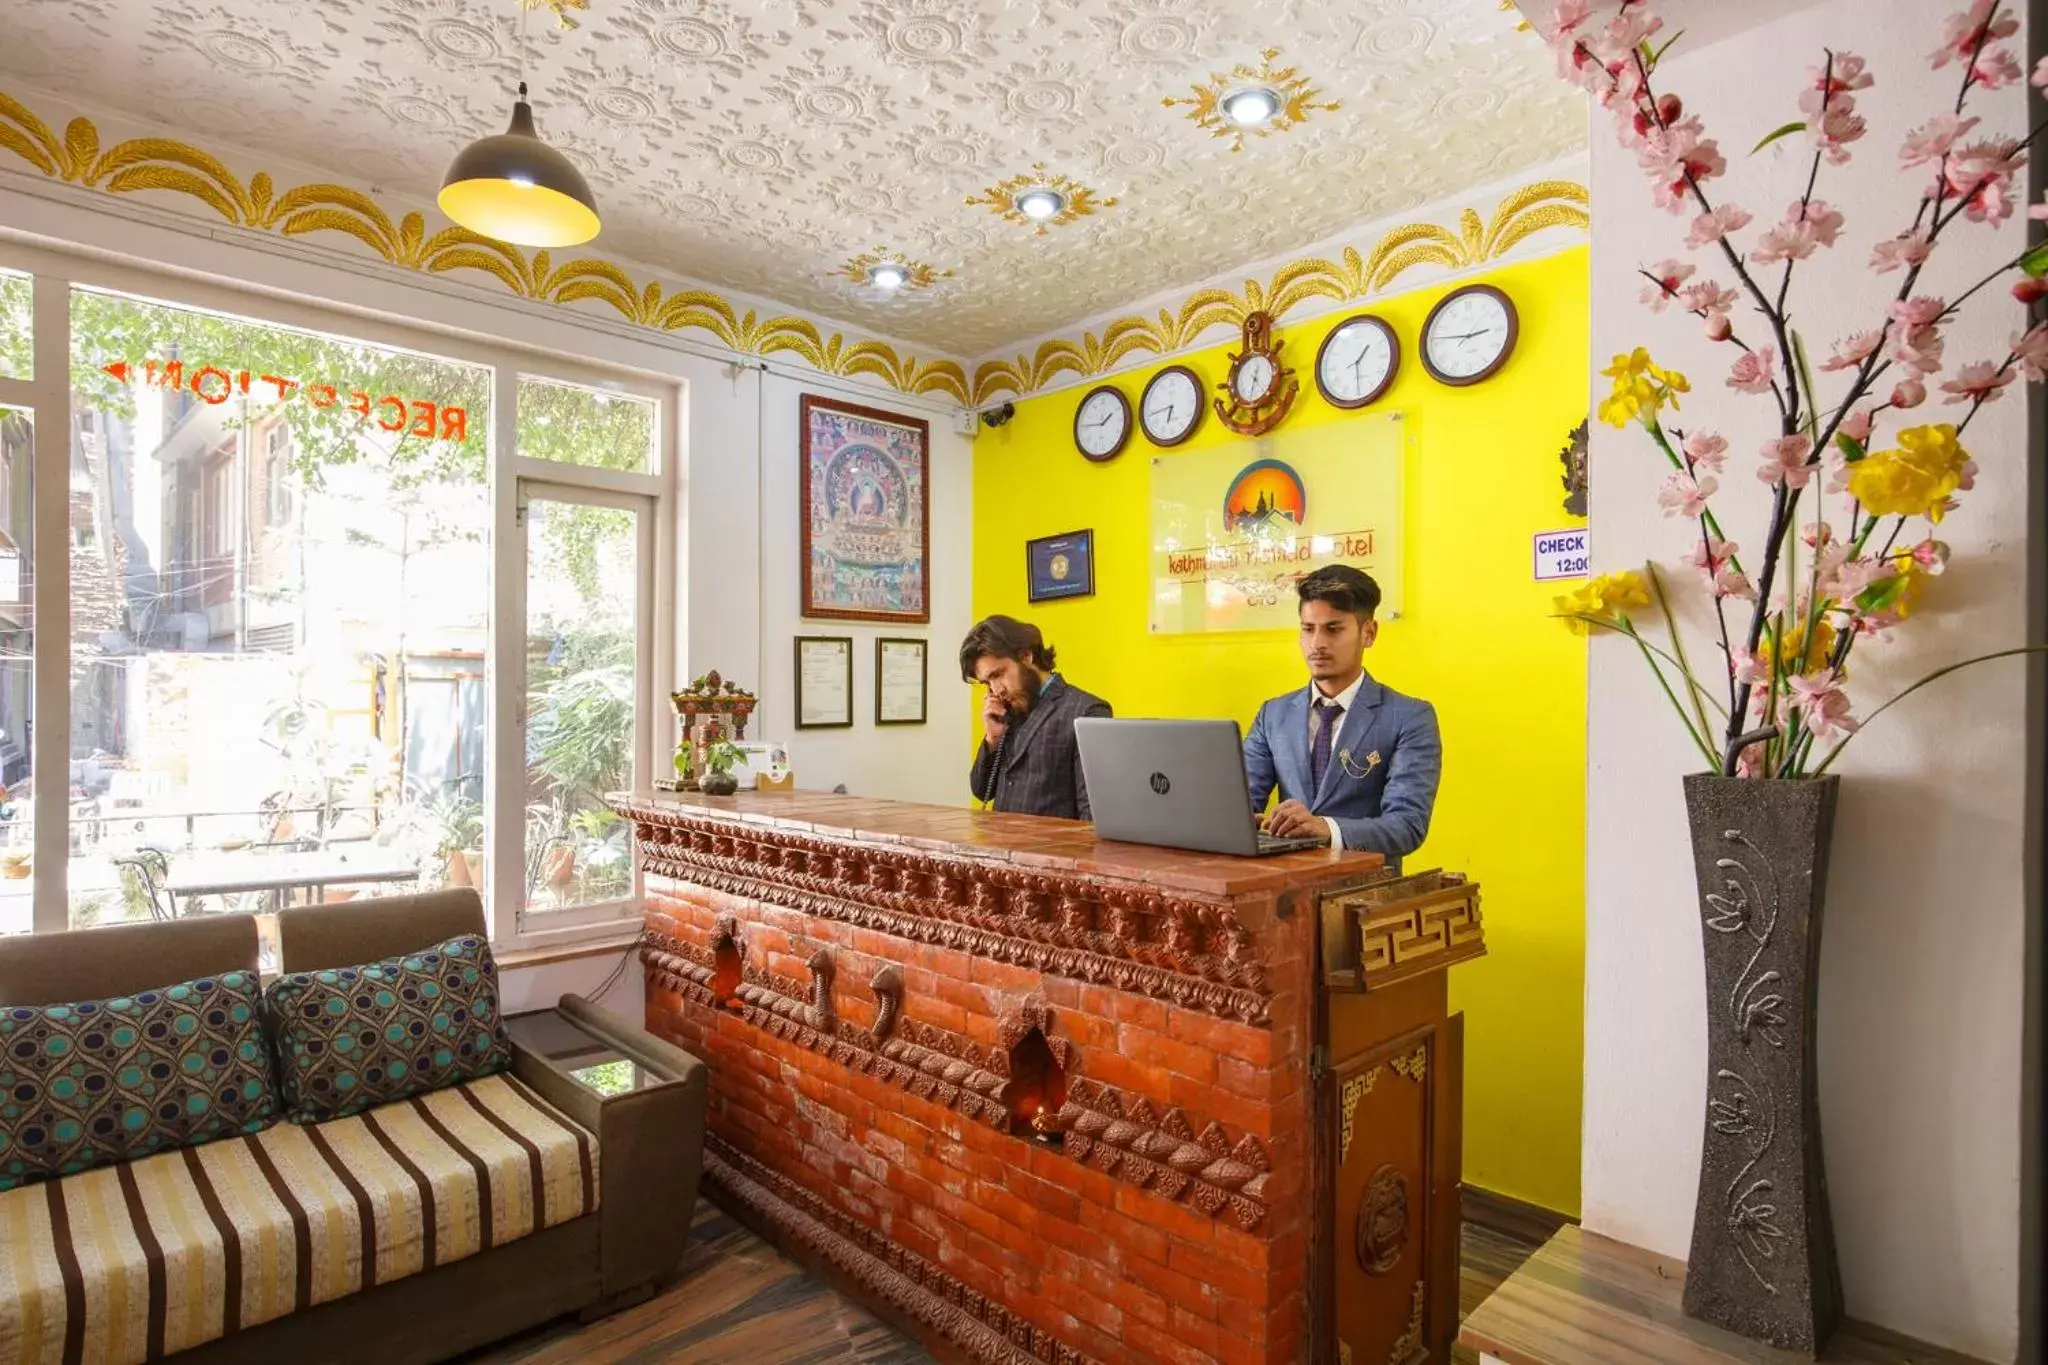 Lobby or reception in KATHMANDU NOMAD HOTEL